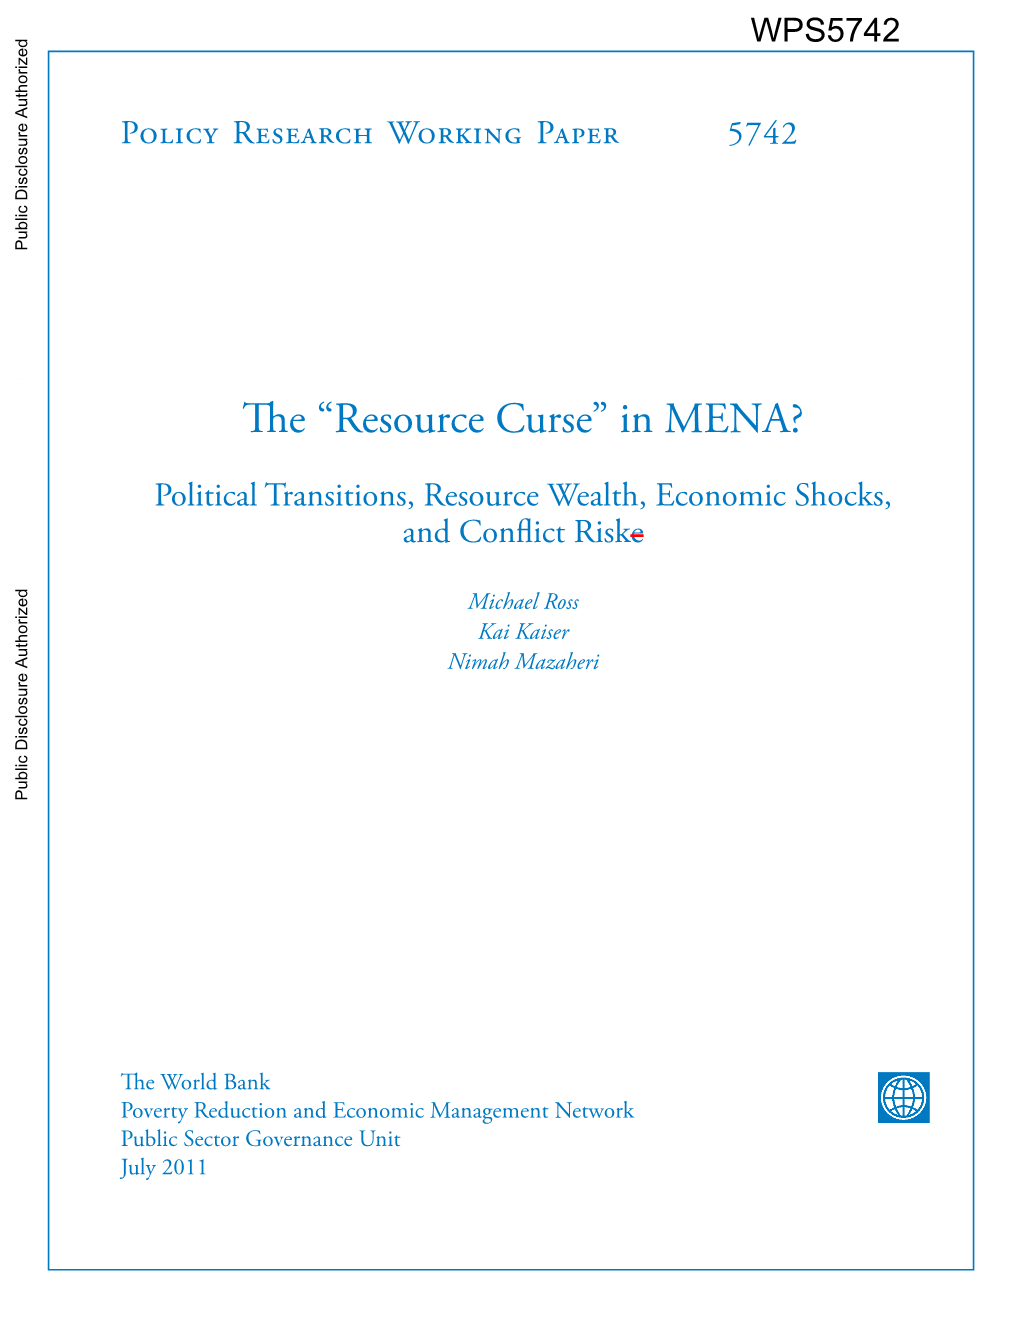 Resource Curse” in MENA?